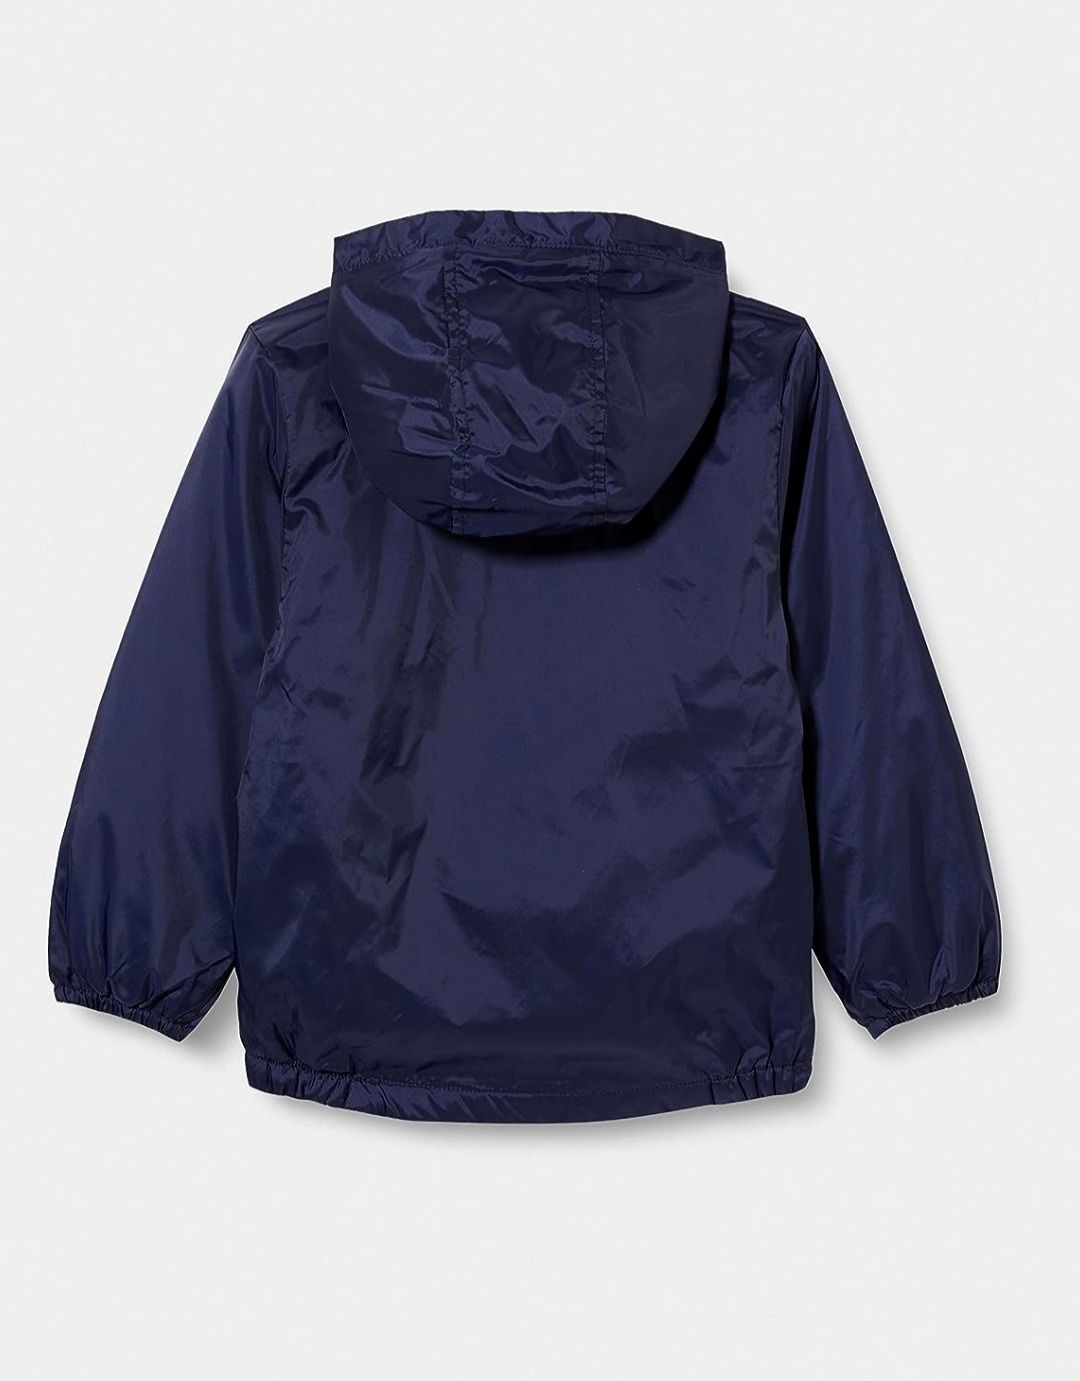 Benetton легкая куртка, утепленная ветровка 3-4 г 104 см